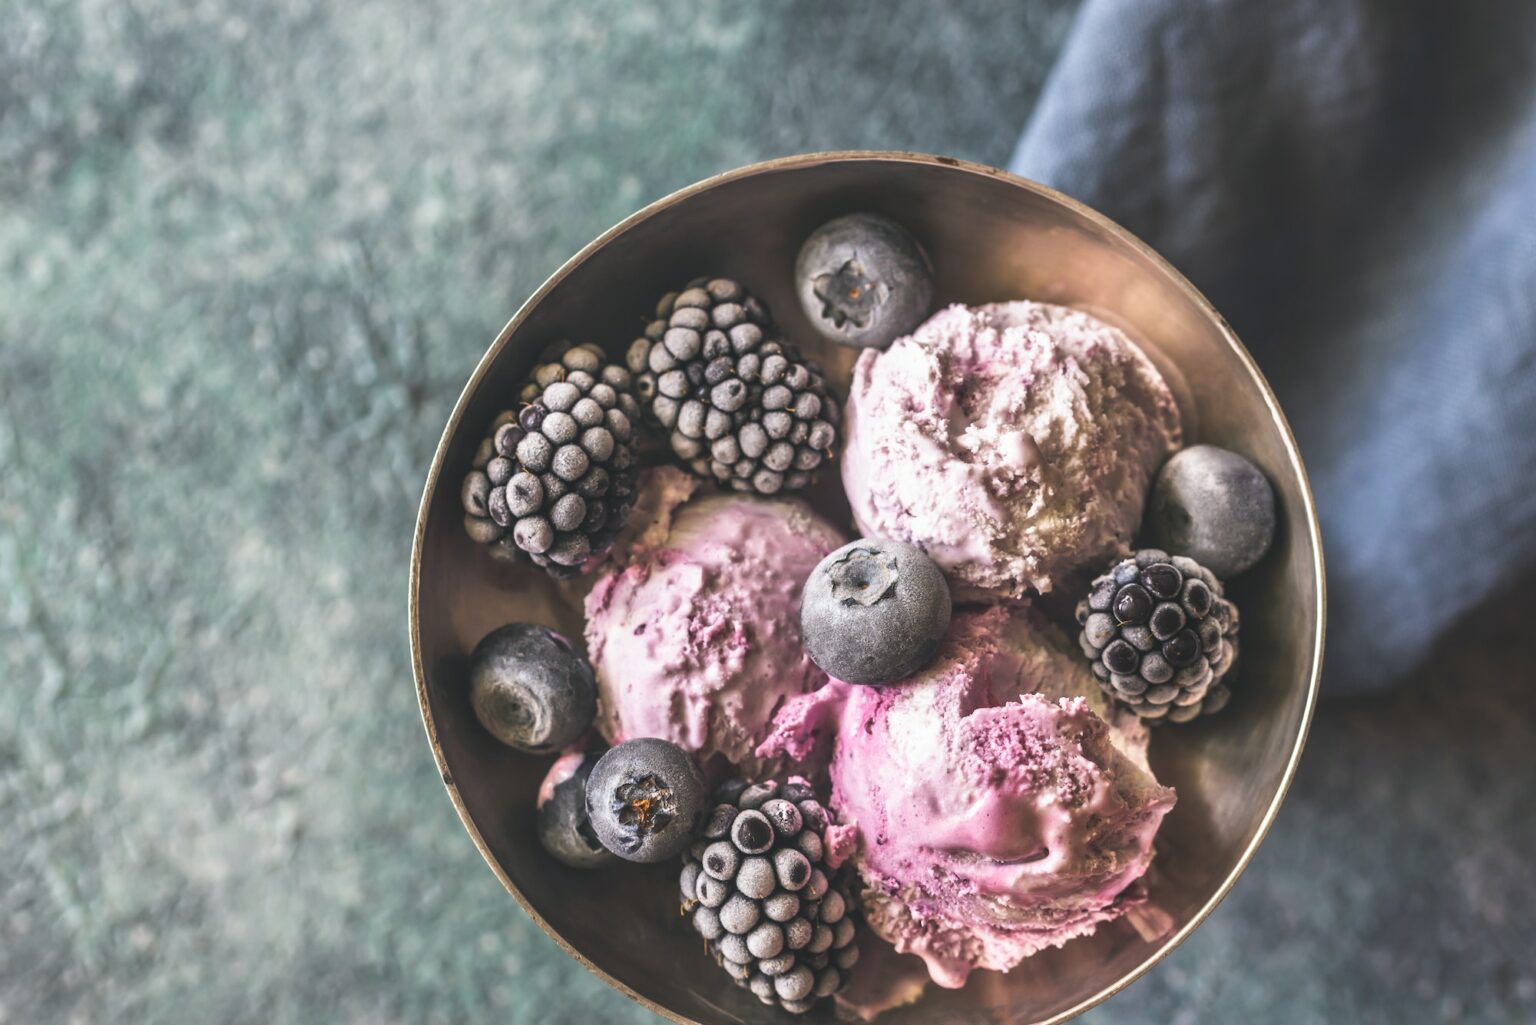 Blueberry and blackberry ice-cream